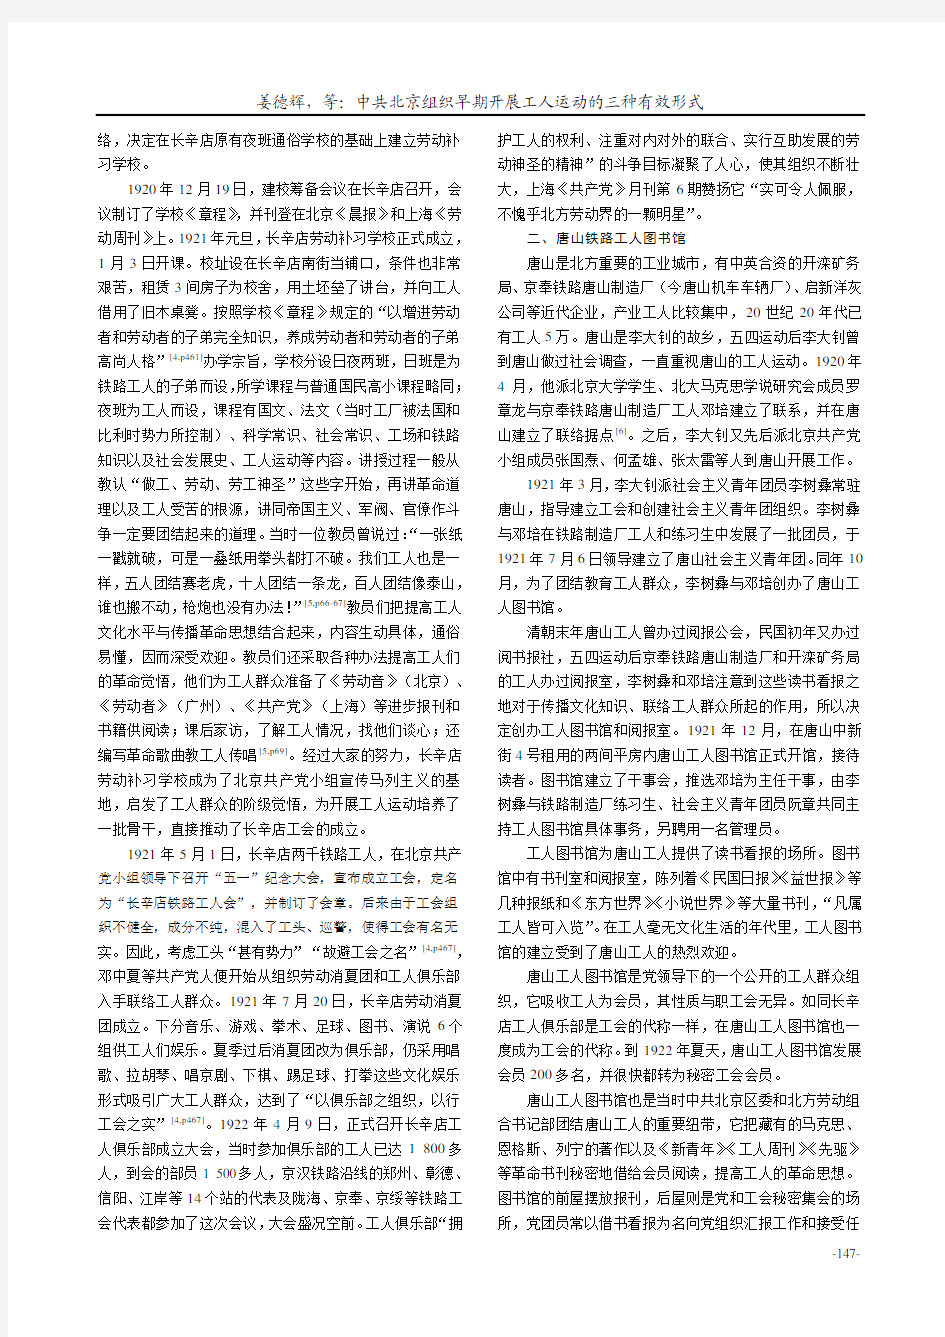 中共北京组织早期开展工人运动的三种有效形式